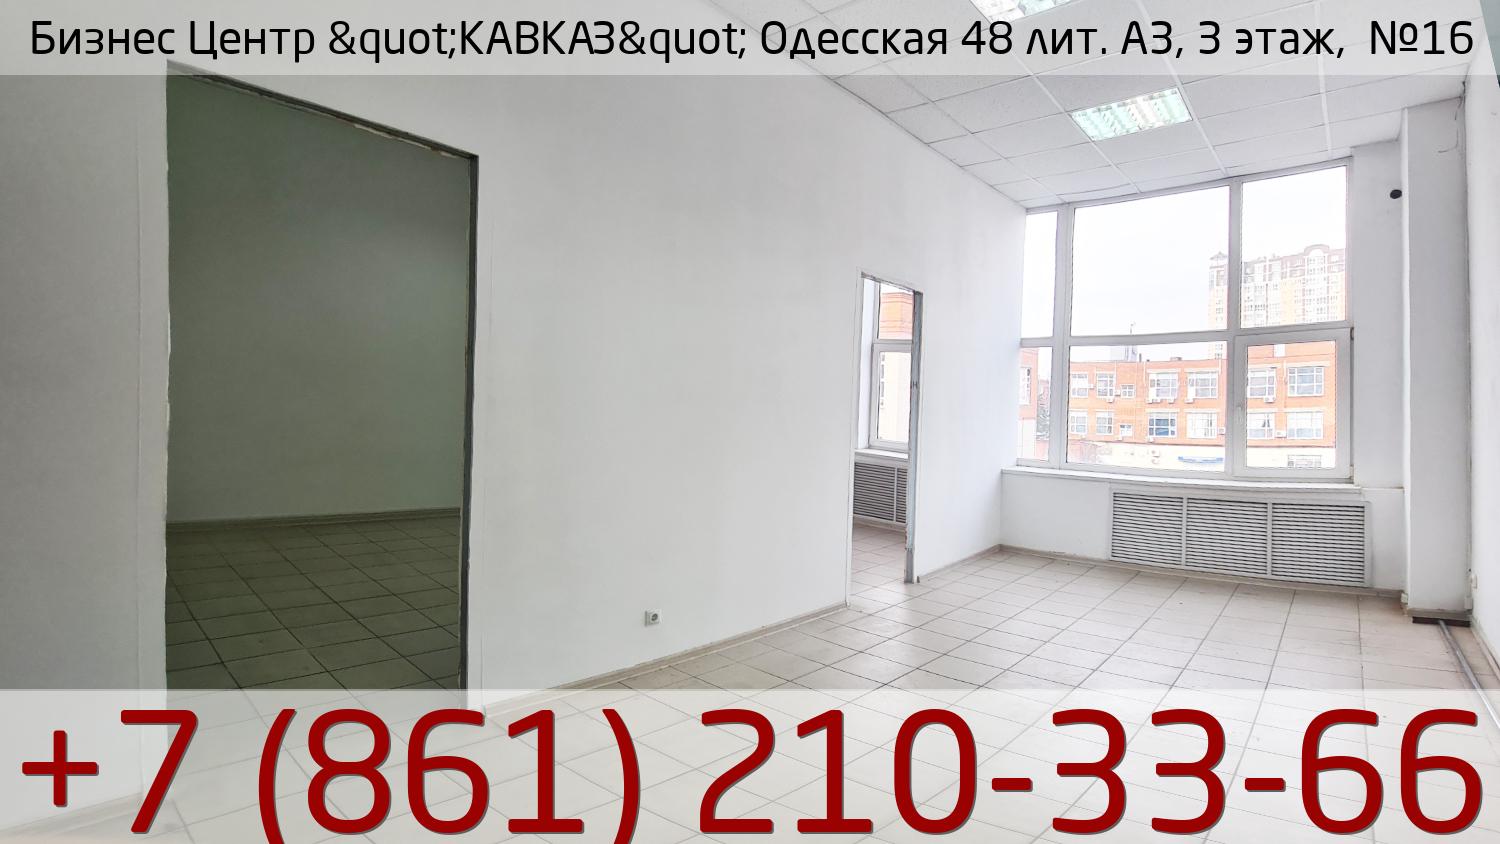 Бизнес Центр &quot;КАВКАЗ&quot; Одесская 48 лит. А3, 3 этаж,  №16, стоимость: 19 550р.